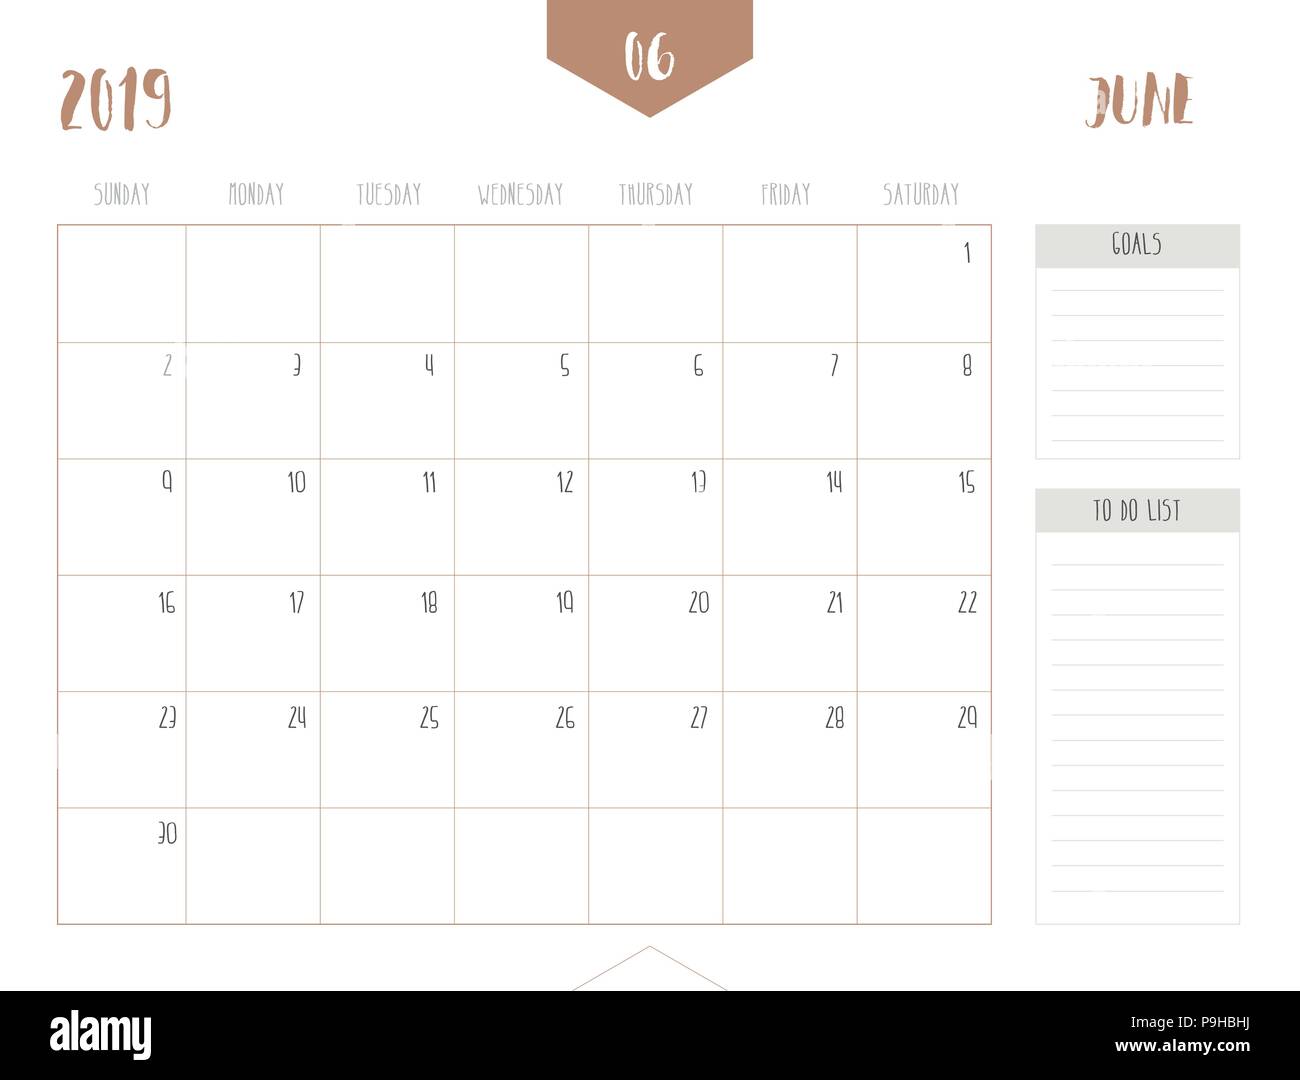 Vettore del calendario 2019 ( giugno ) in semplice pulire il tavolo stile con obiettivi e fare casella di elenco; la piena dimensione 21 x 16 cm; la settimana inizia la domenica Illustrazione Vettoriale